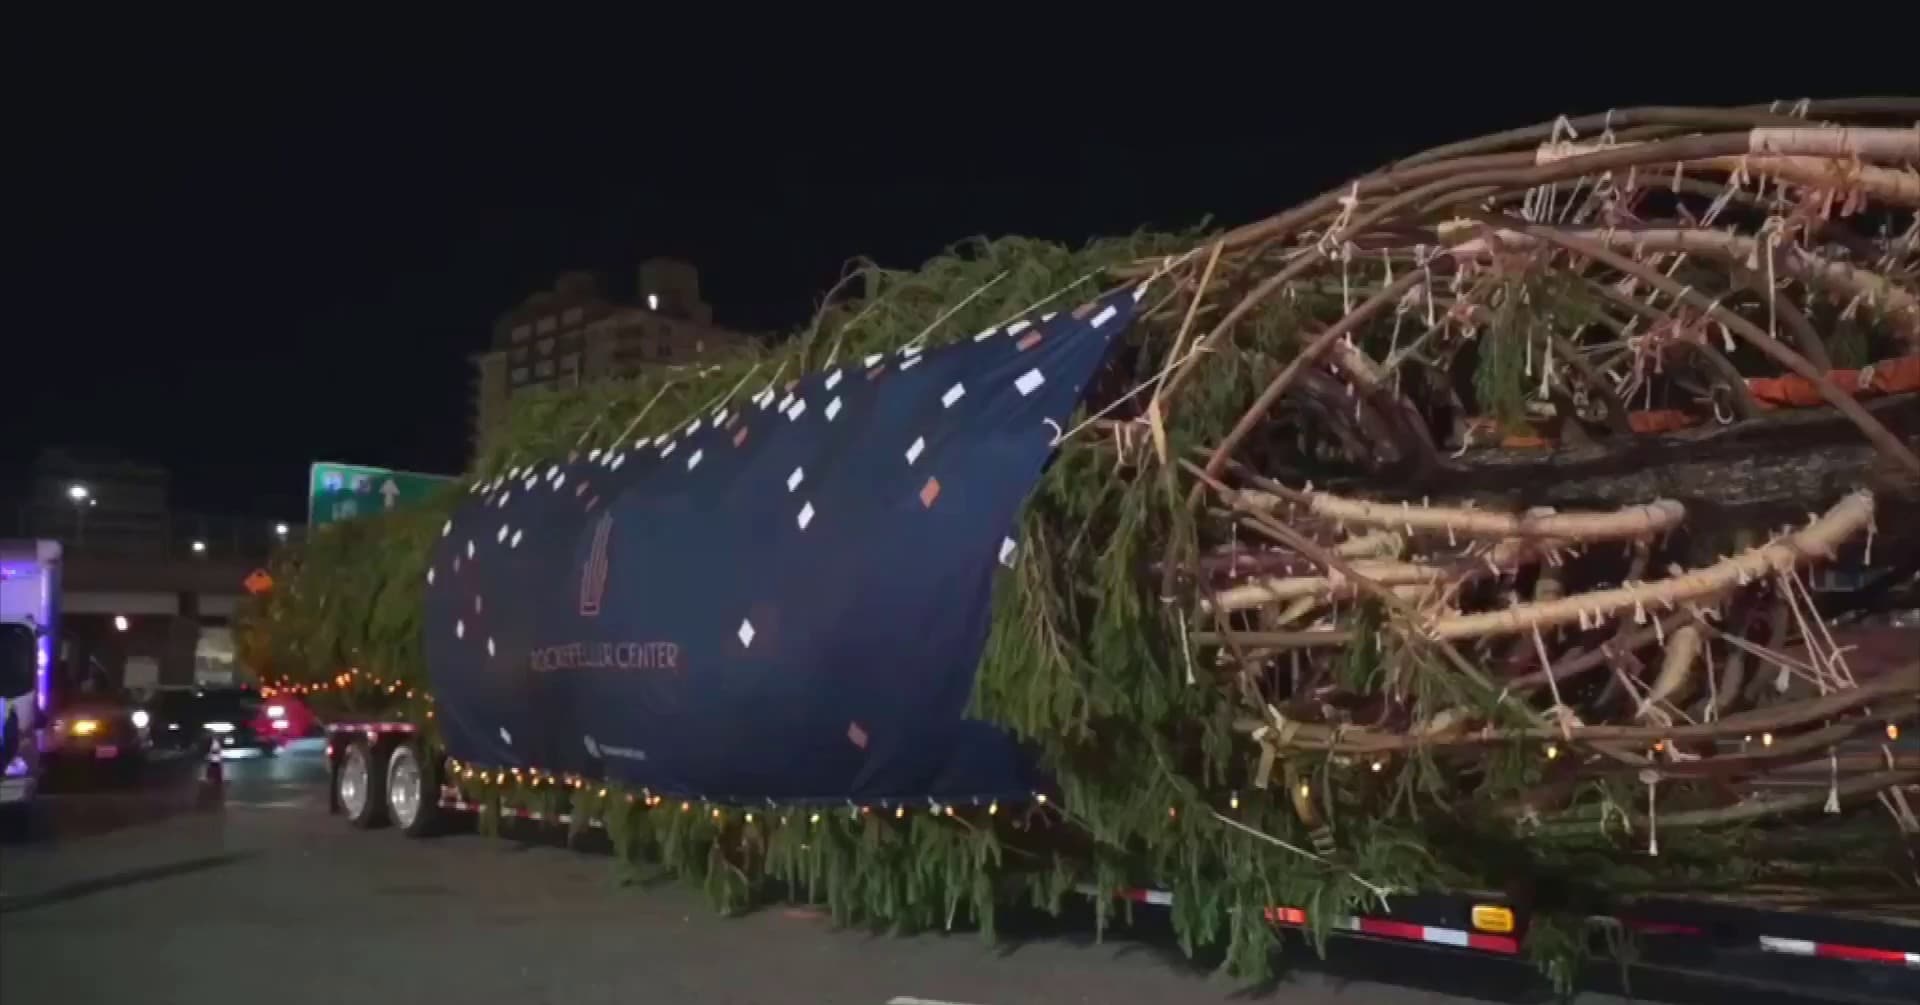 Katso videolta, kuinka erittäin pitkä kuljetus saapuu Manhattanille – kyydissä tuttu joulunajan symboli